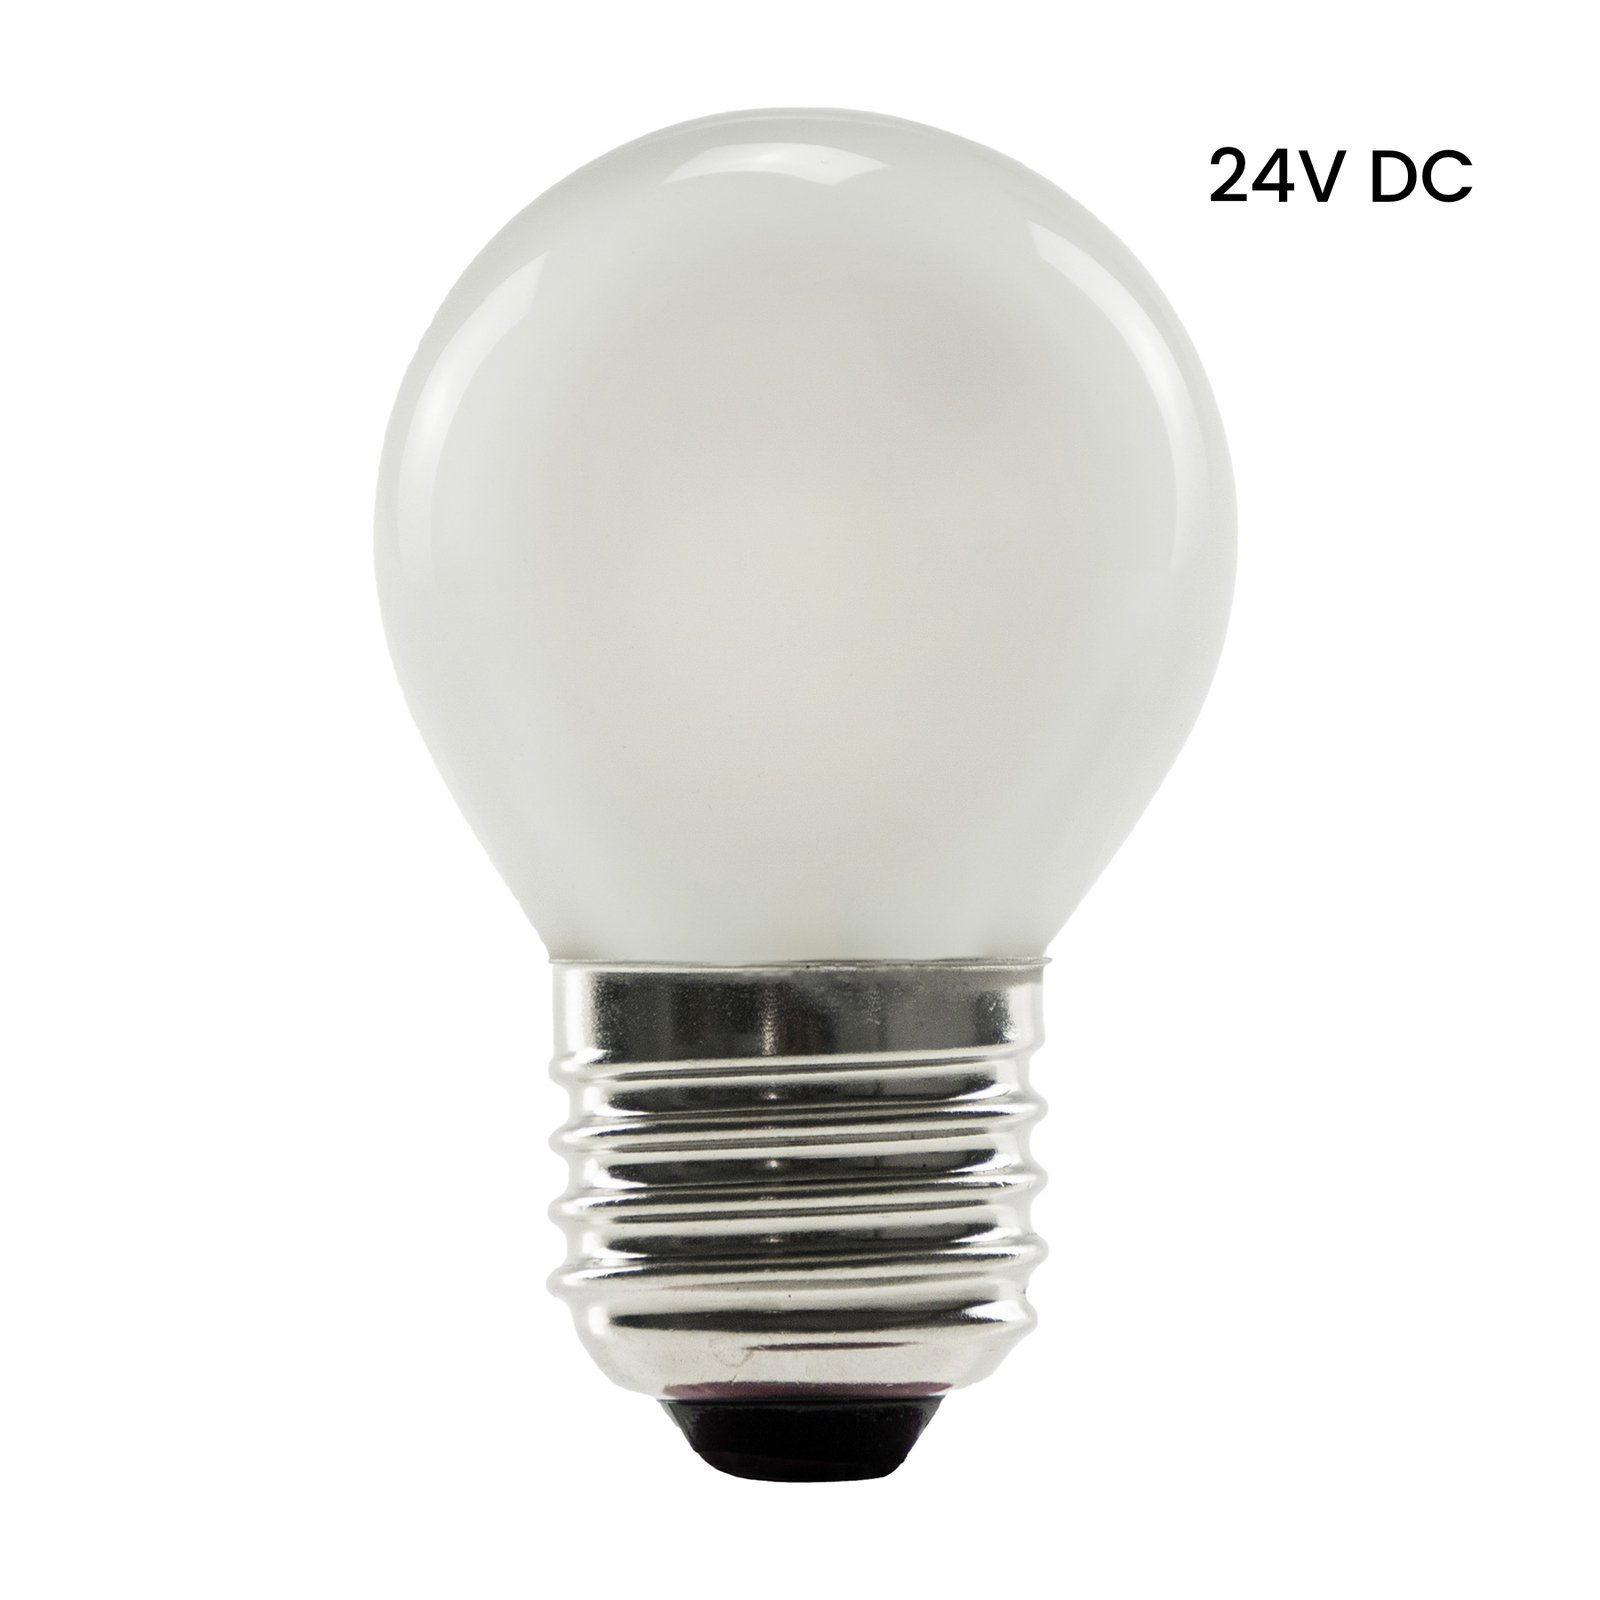 SEGULA LED-Lampe 24V DC E27 3W 927 ambient dimm matt